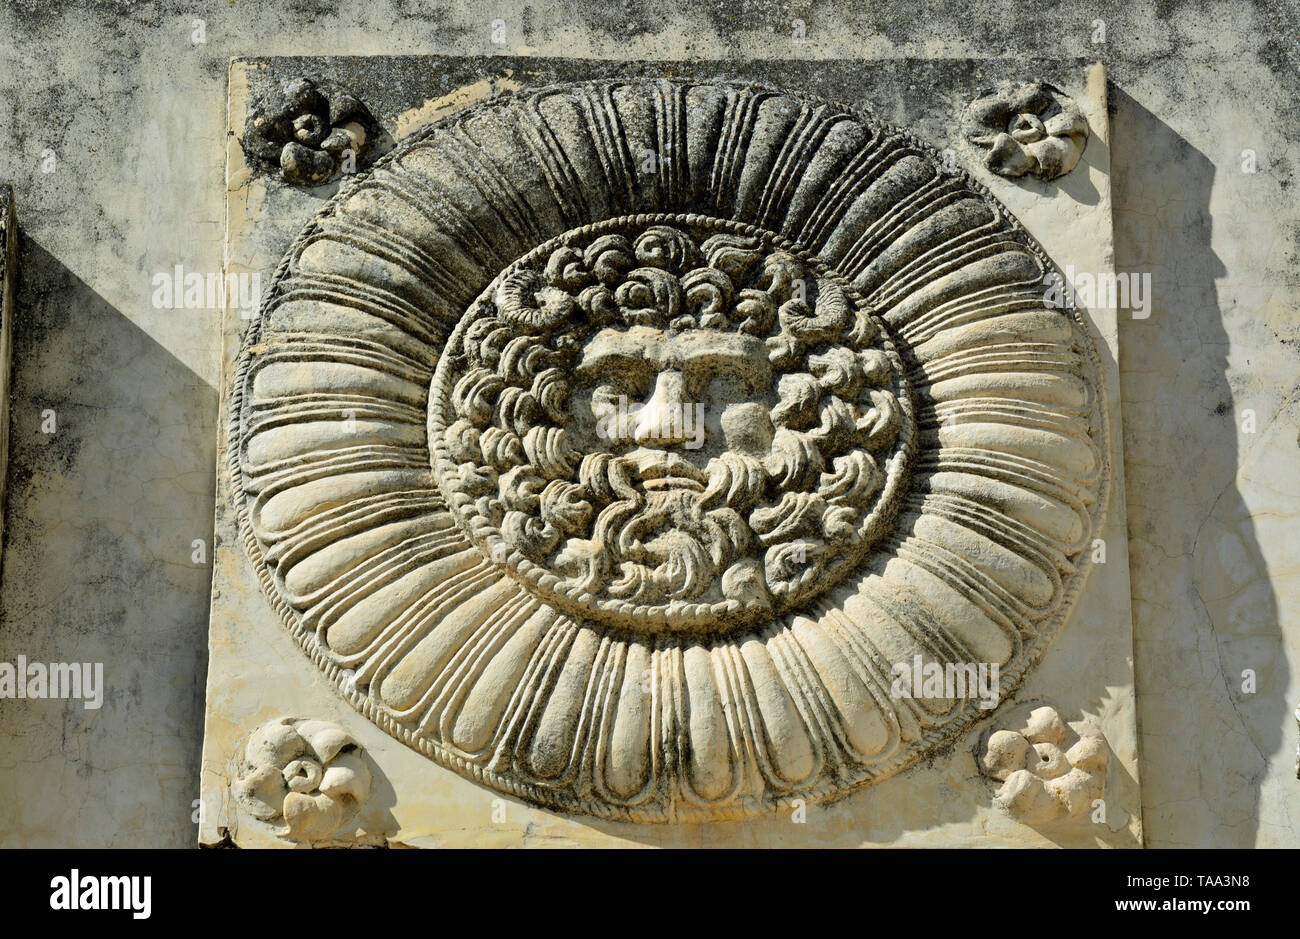 Dettagli del Portico del Foro Romano di Merida. Queste rappresentazioni di Giove Ammone simboleggiato il potere supremo di Roma. Spagna Foto Stock